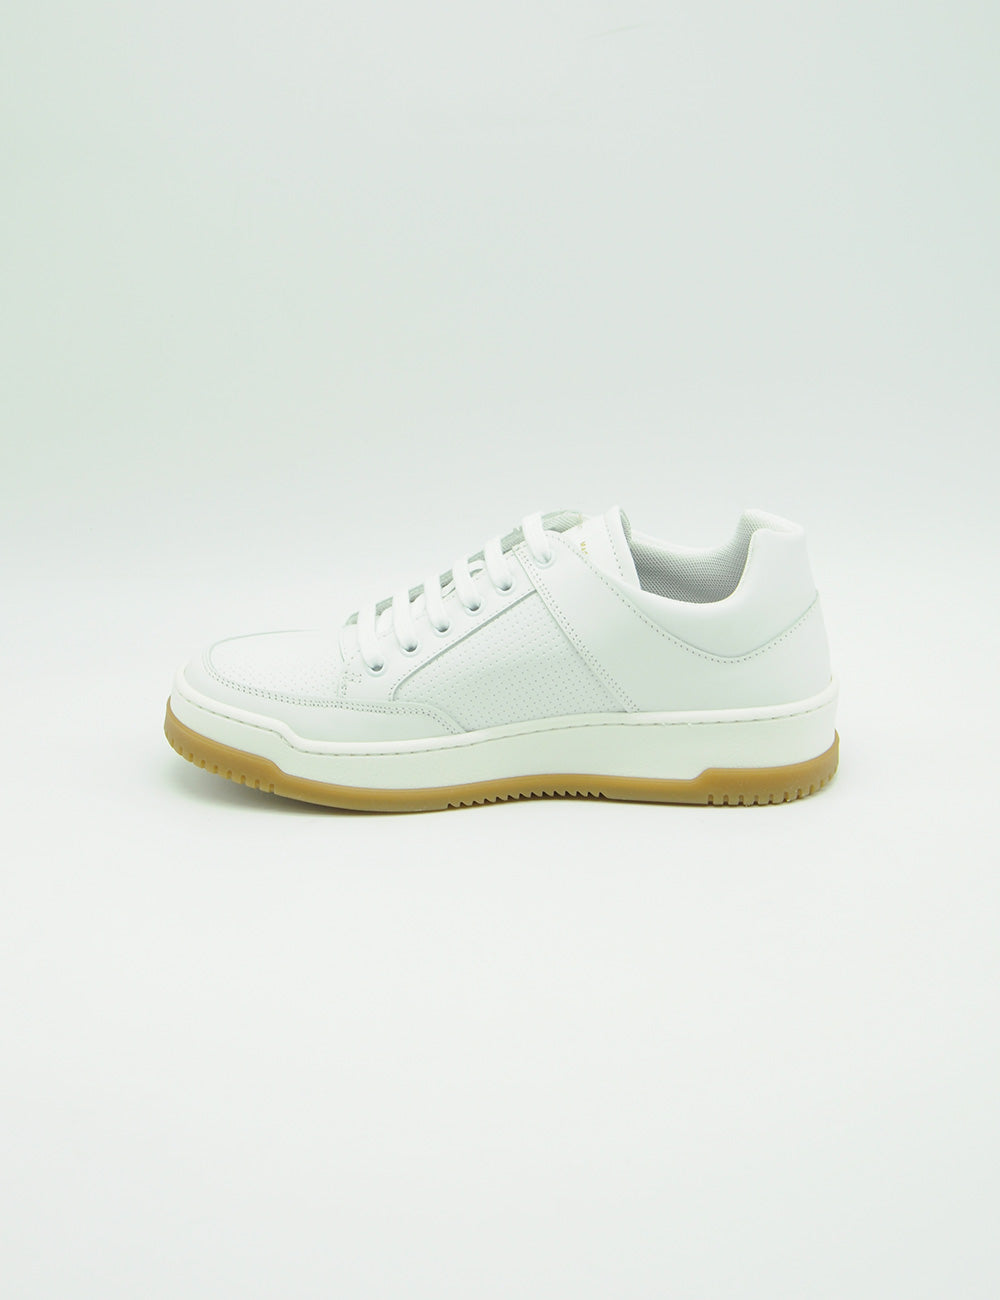 Liviana Conti White Sneakers